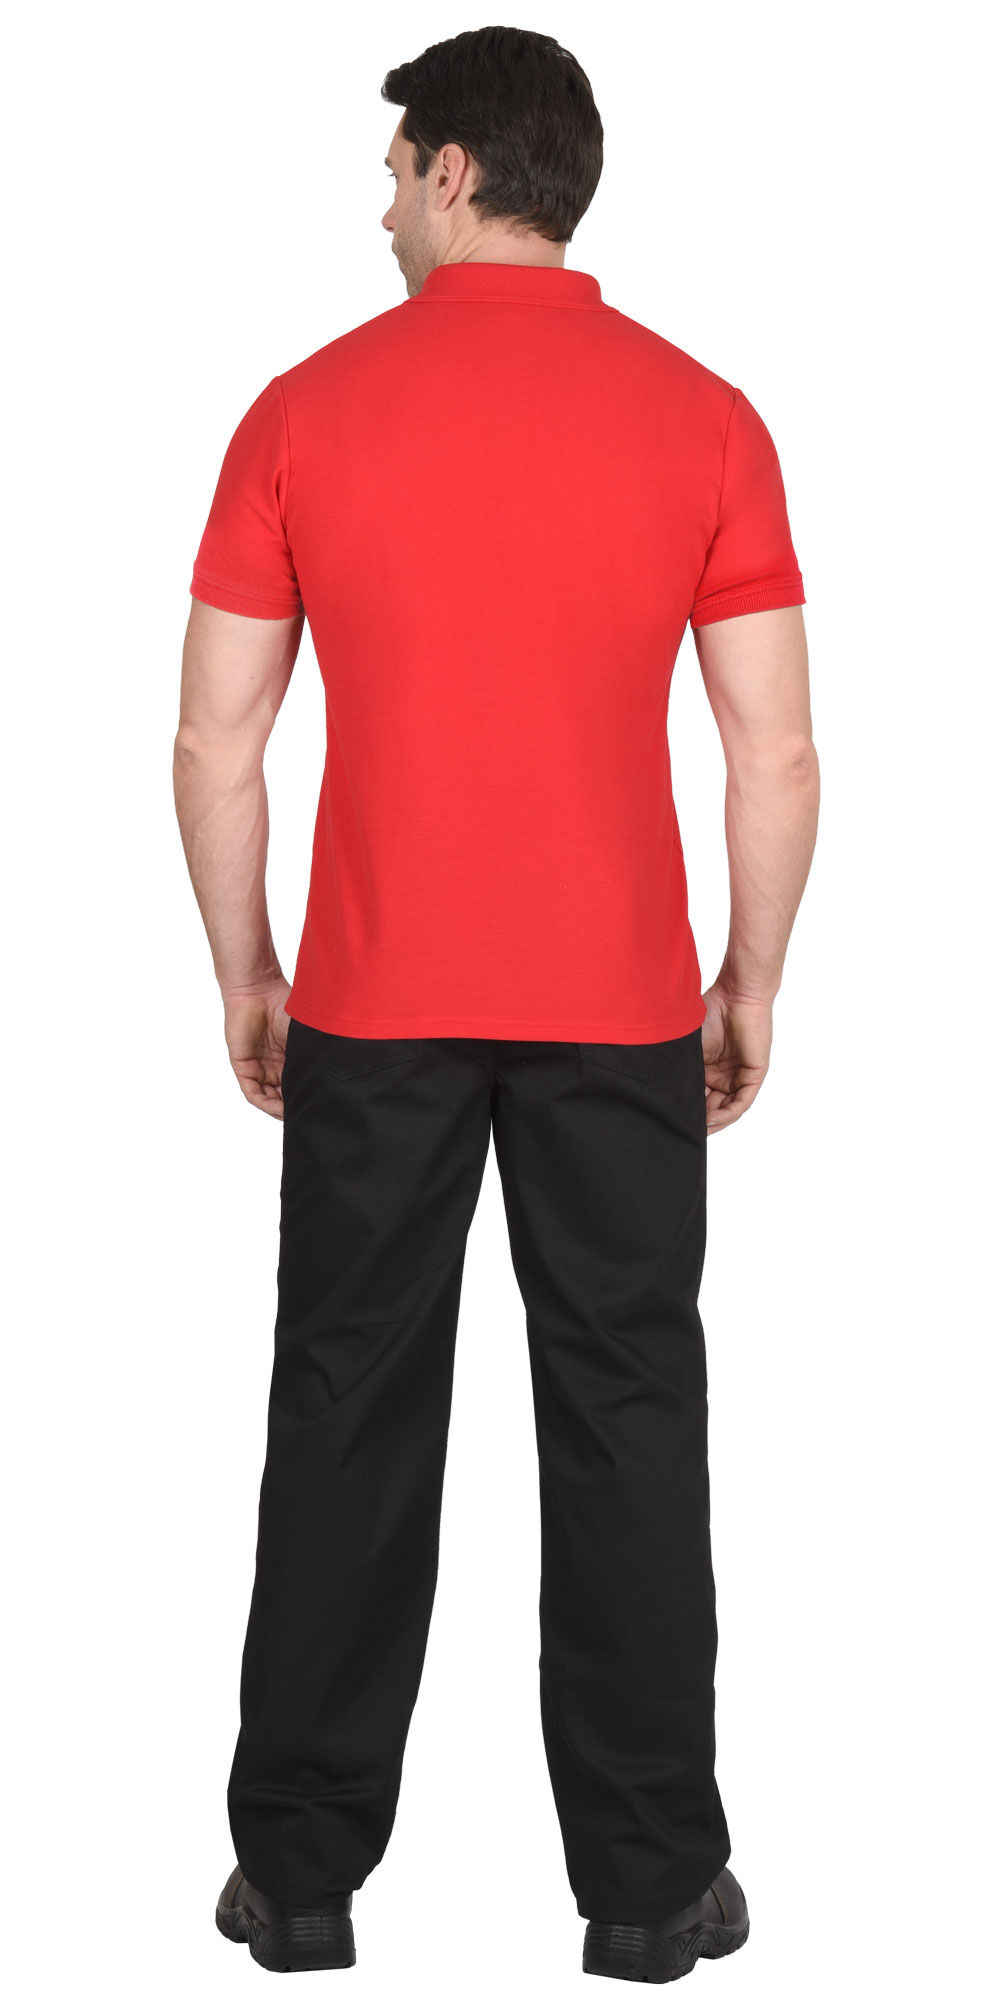 Рубашка-поло красная короткие рукава с манжетом, пл.180 г/м2 #3